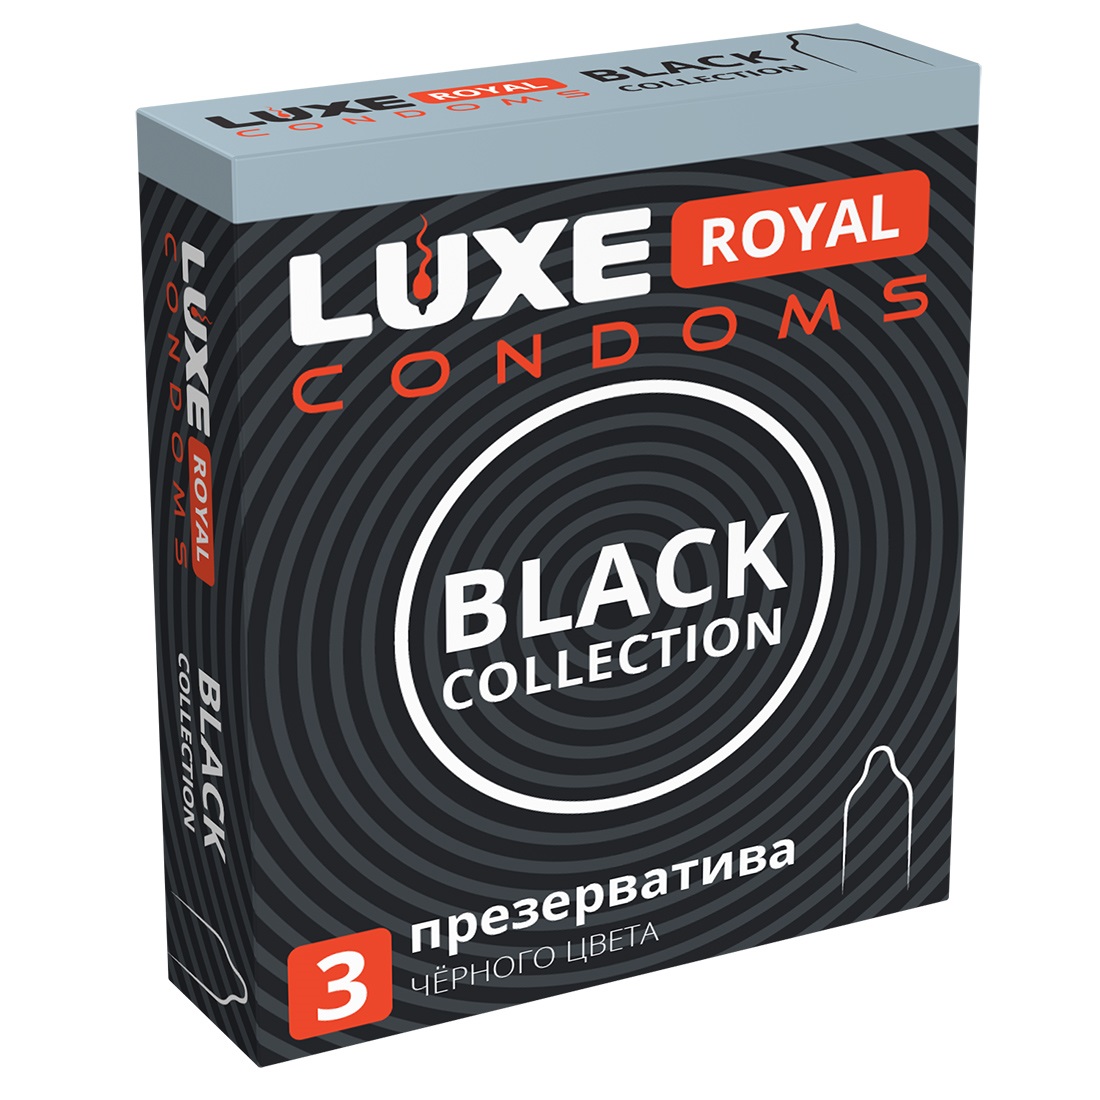 ПРЕЗЕРВАТИВЫ LUX ROYAL 3шт гладкие цветные (Черные) Black Co